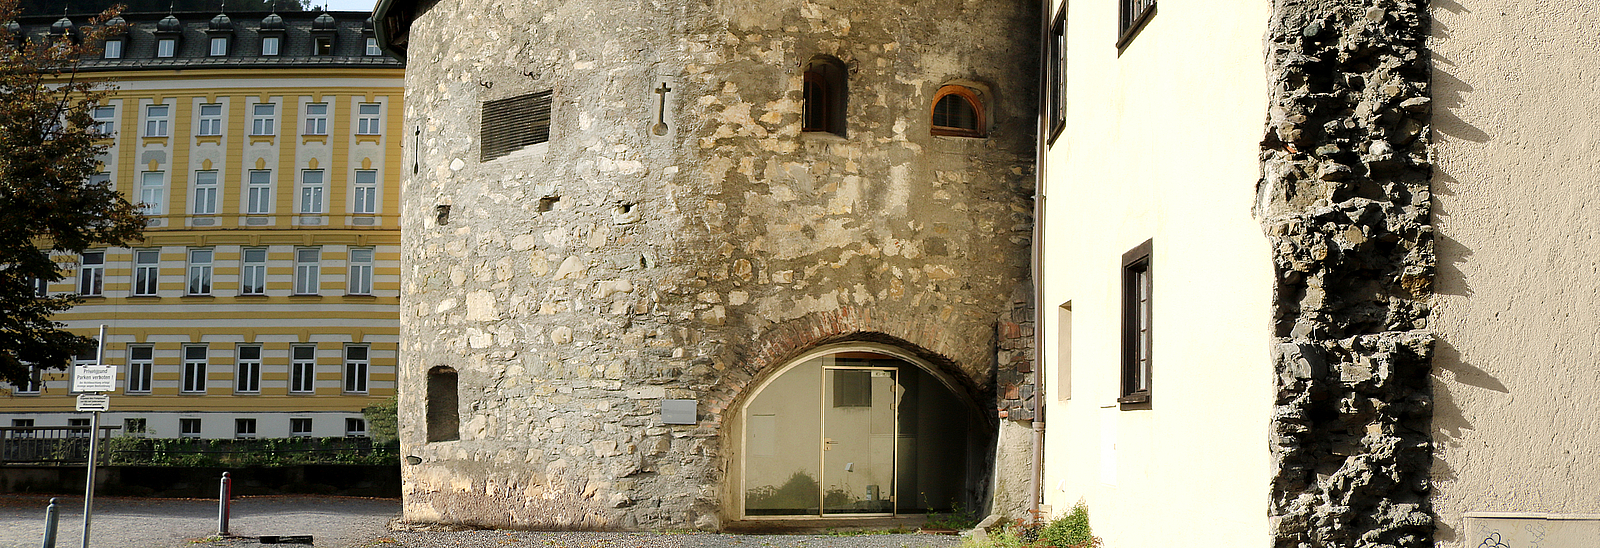 Der Pulverturm in Feldkirch von außen